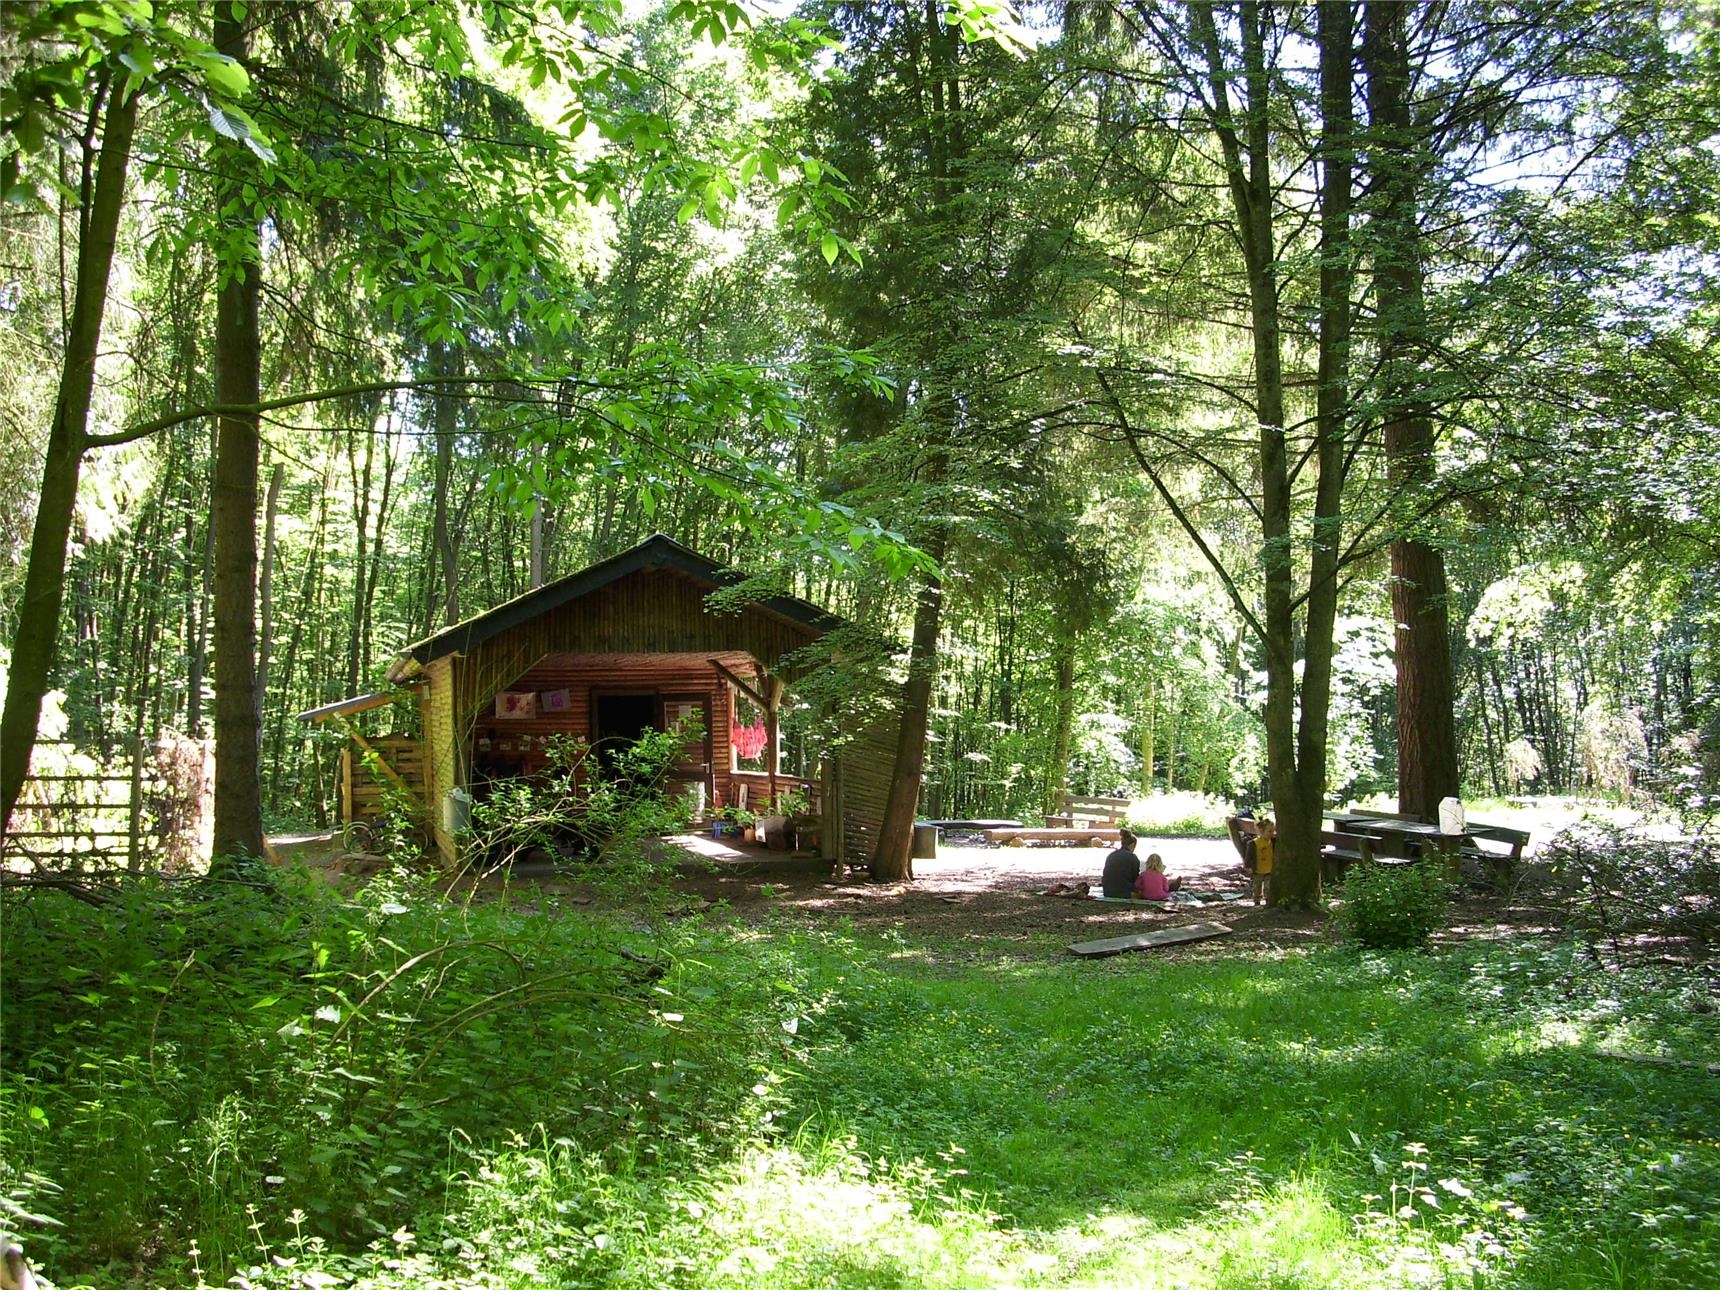 Hütte und Areal des Waldkindergartens (Gerth)